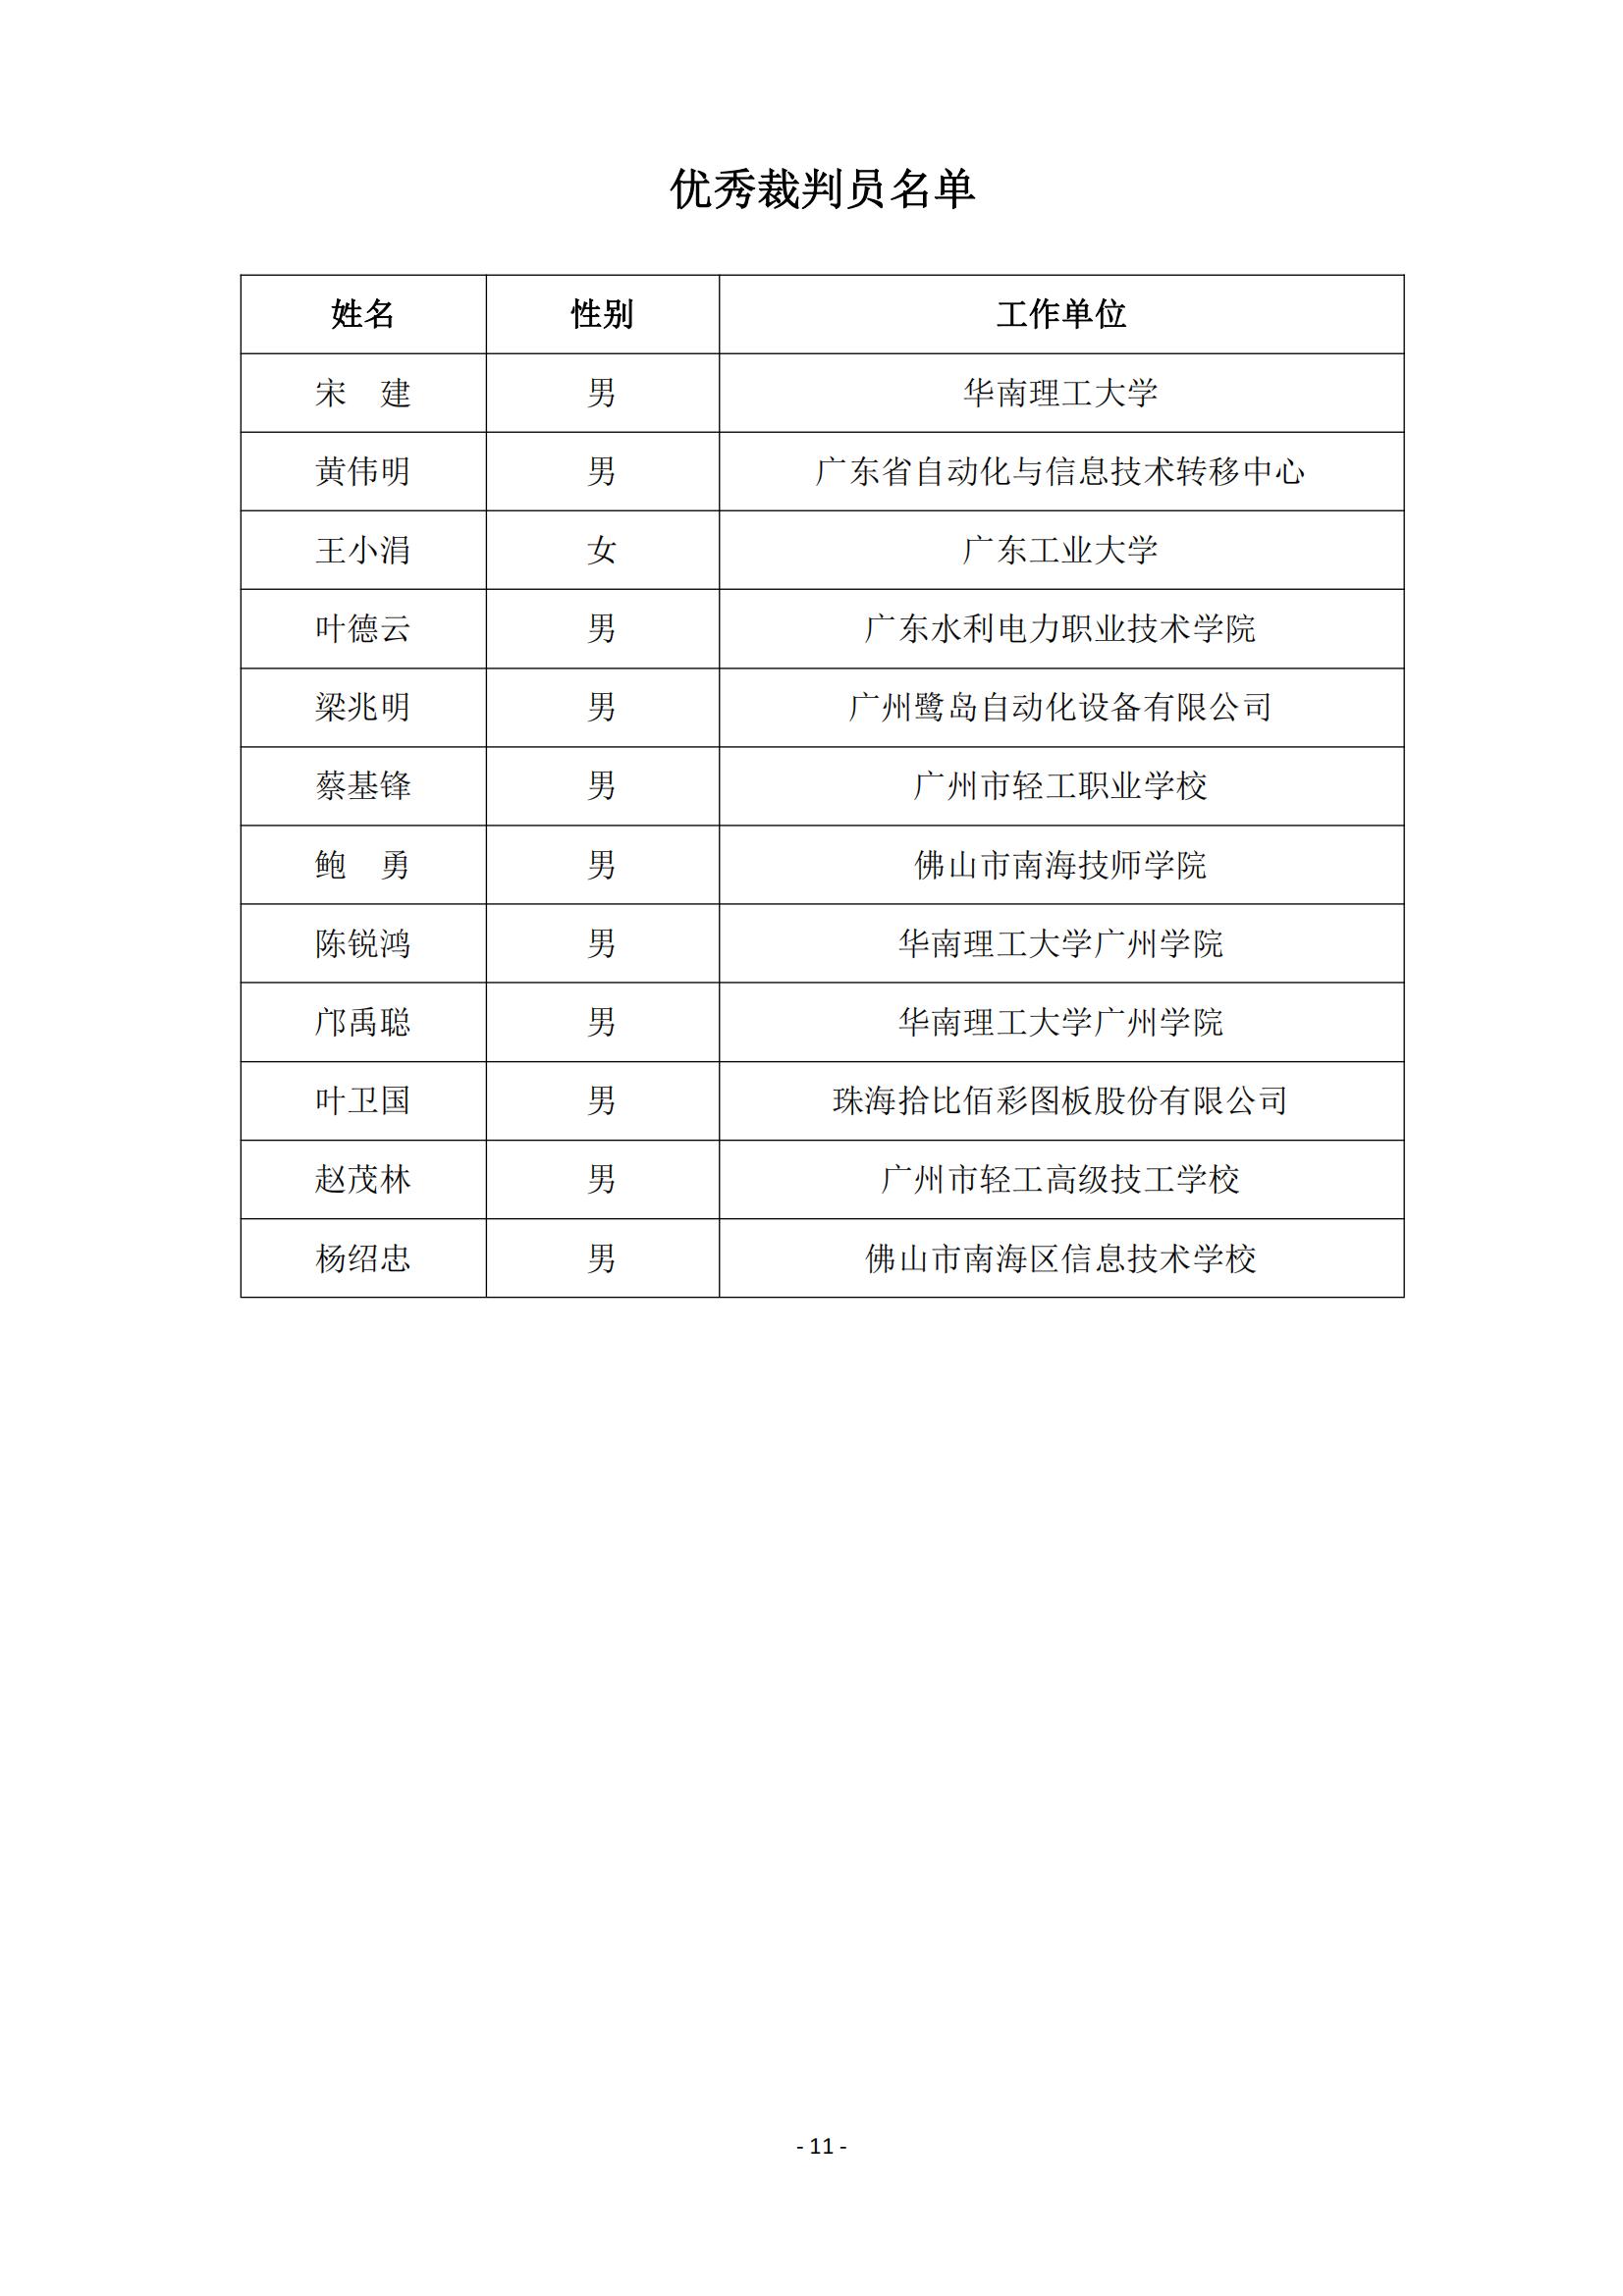 2015 年中国技能大赛--广东省机电一体化职业技能竞赛_10.jpg